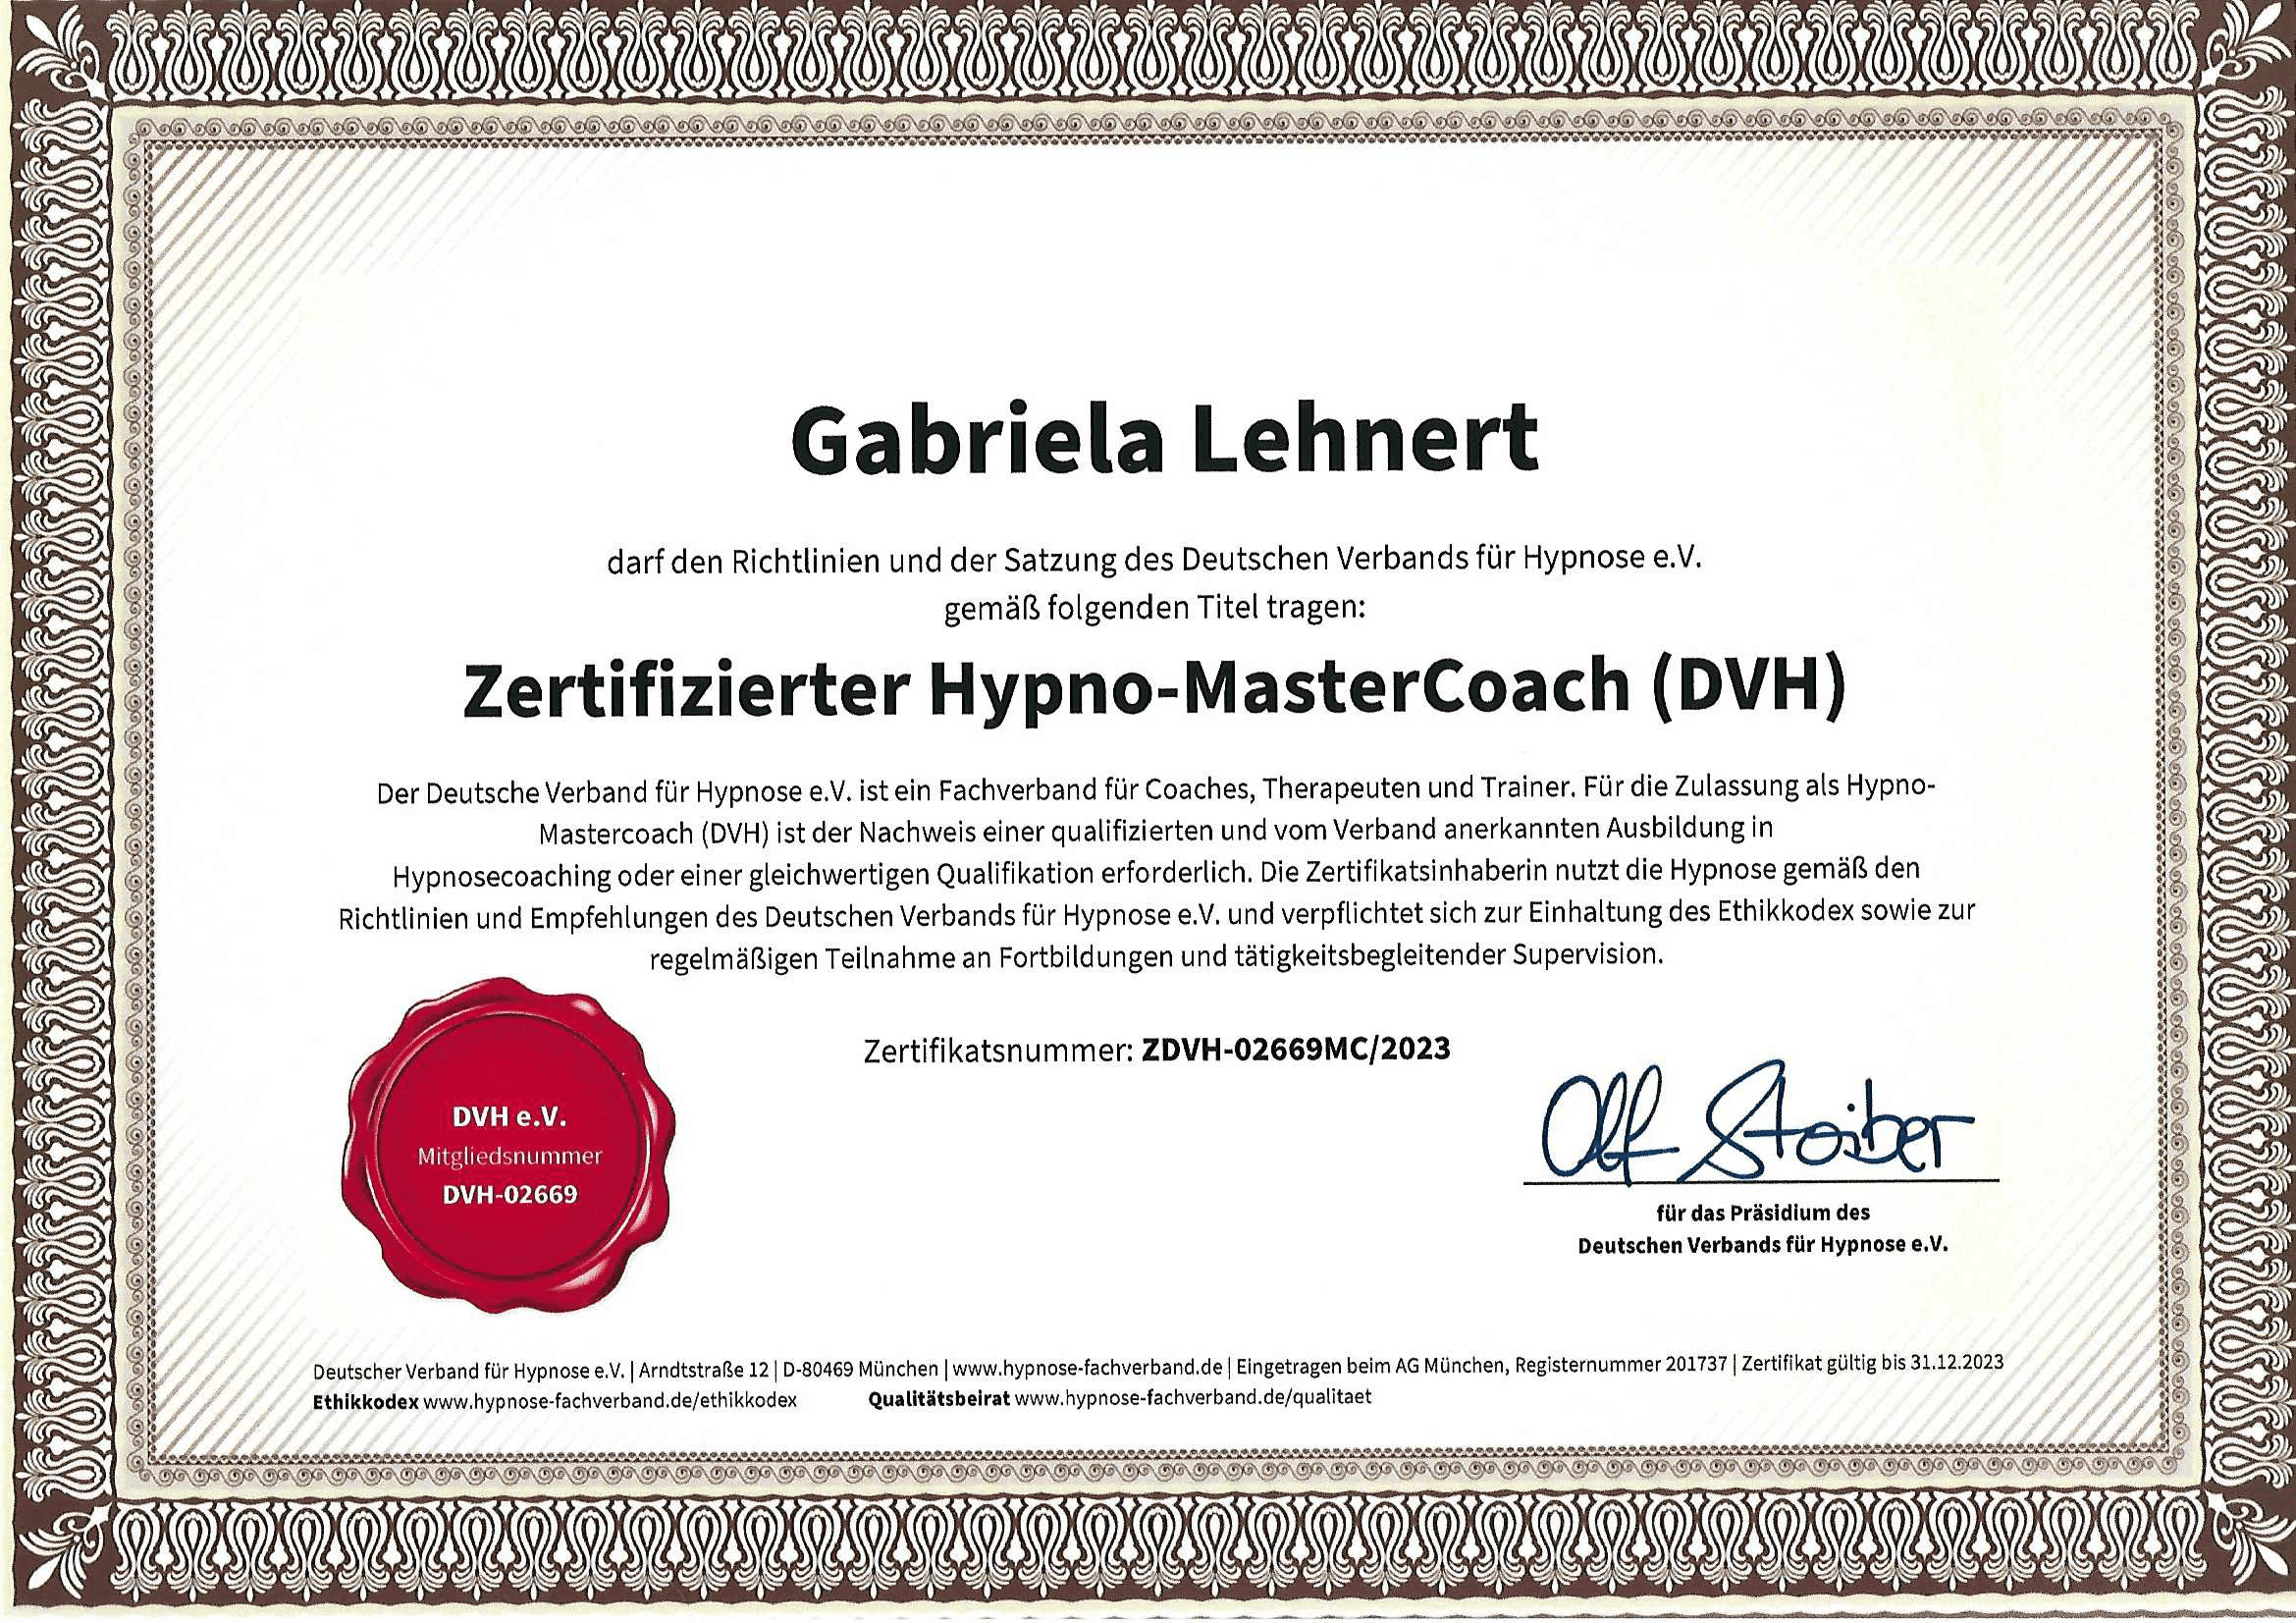 Gabriela Lehnert - Zertifizierter Hypno-MasterCoach